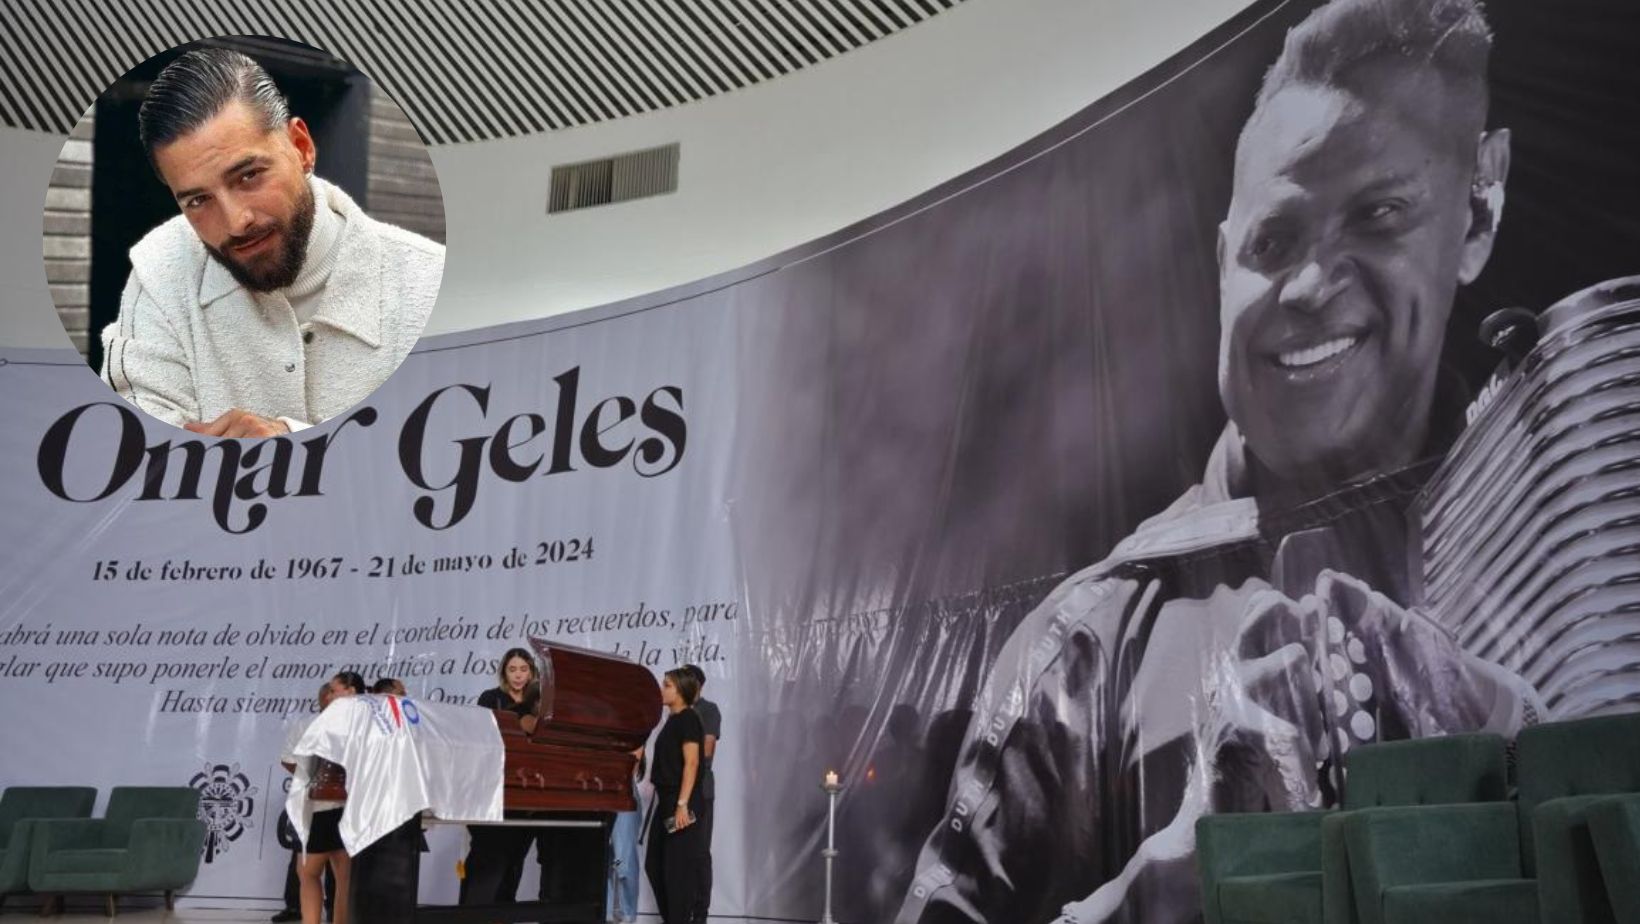 Maluma expresa su pesar por la muerte de Omar Geles: ‘El cielo está triste’